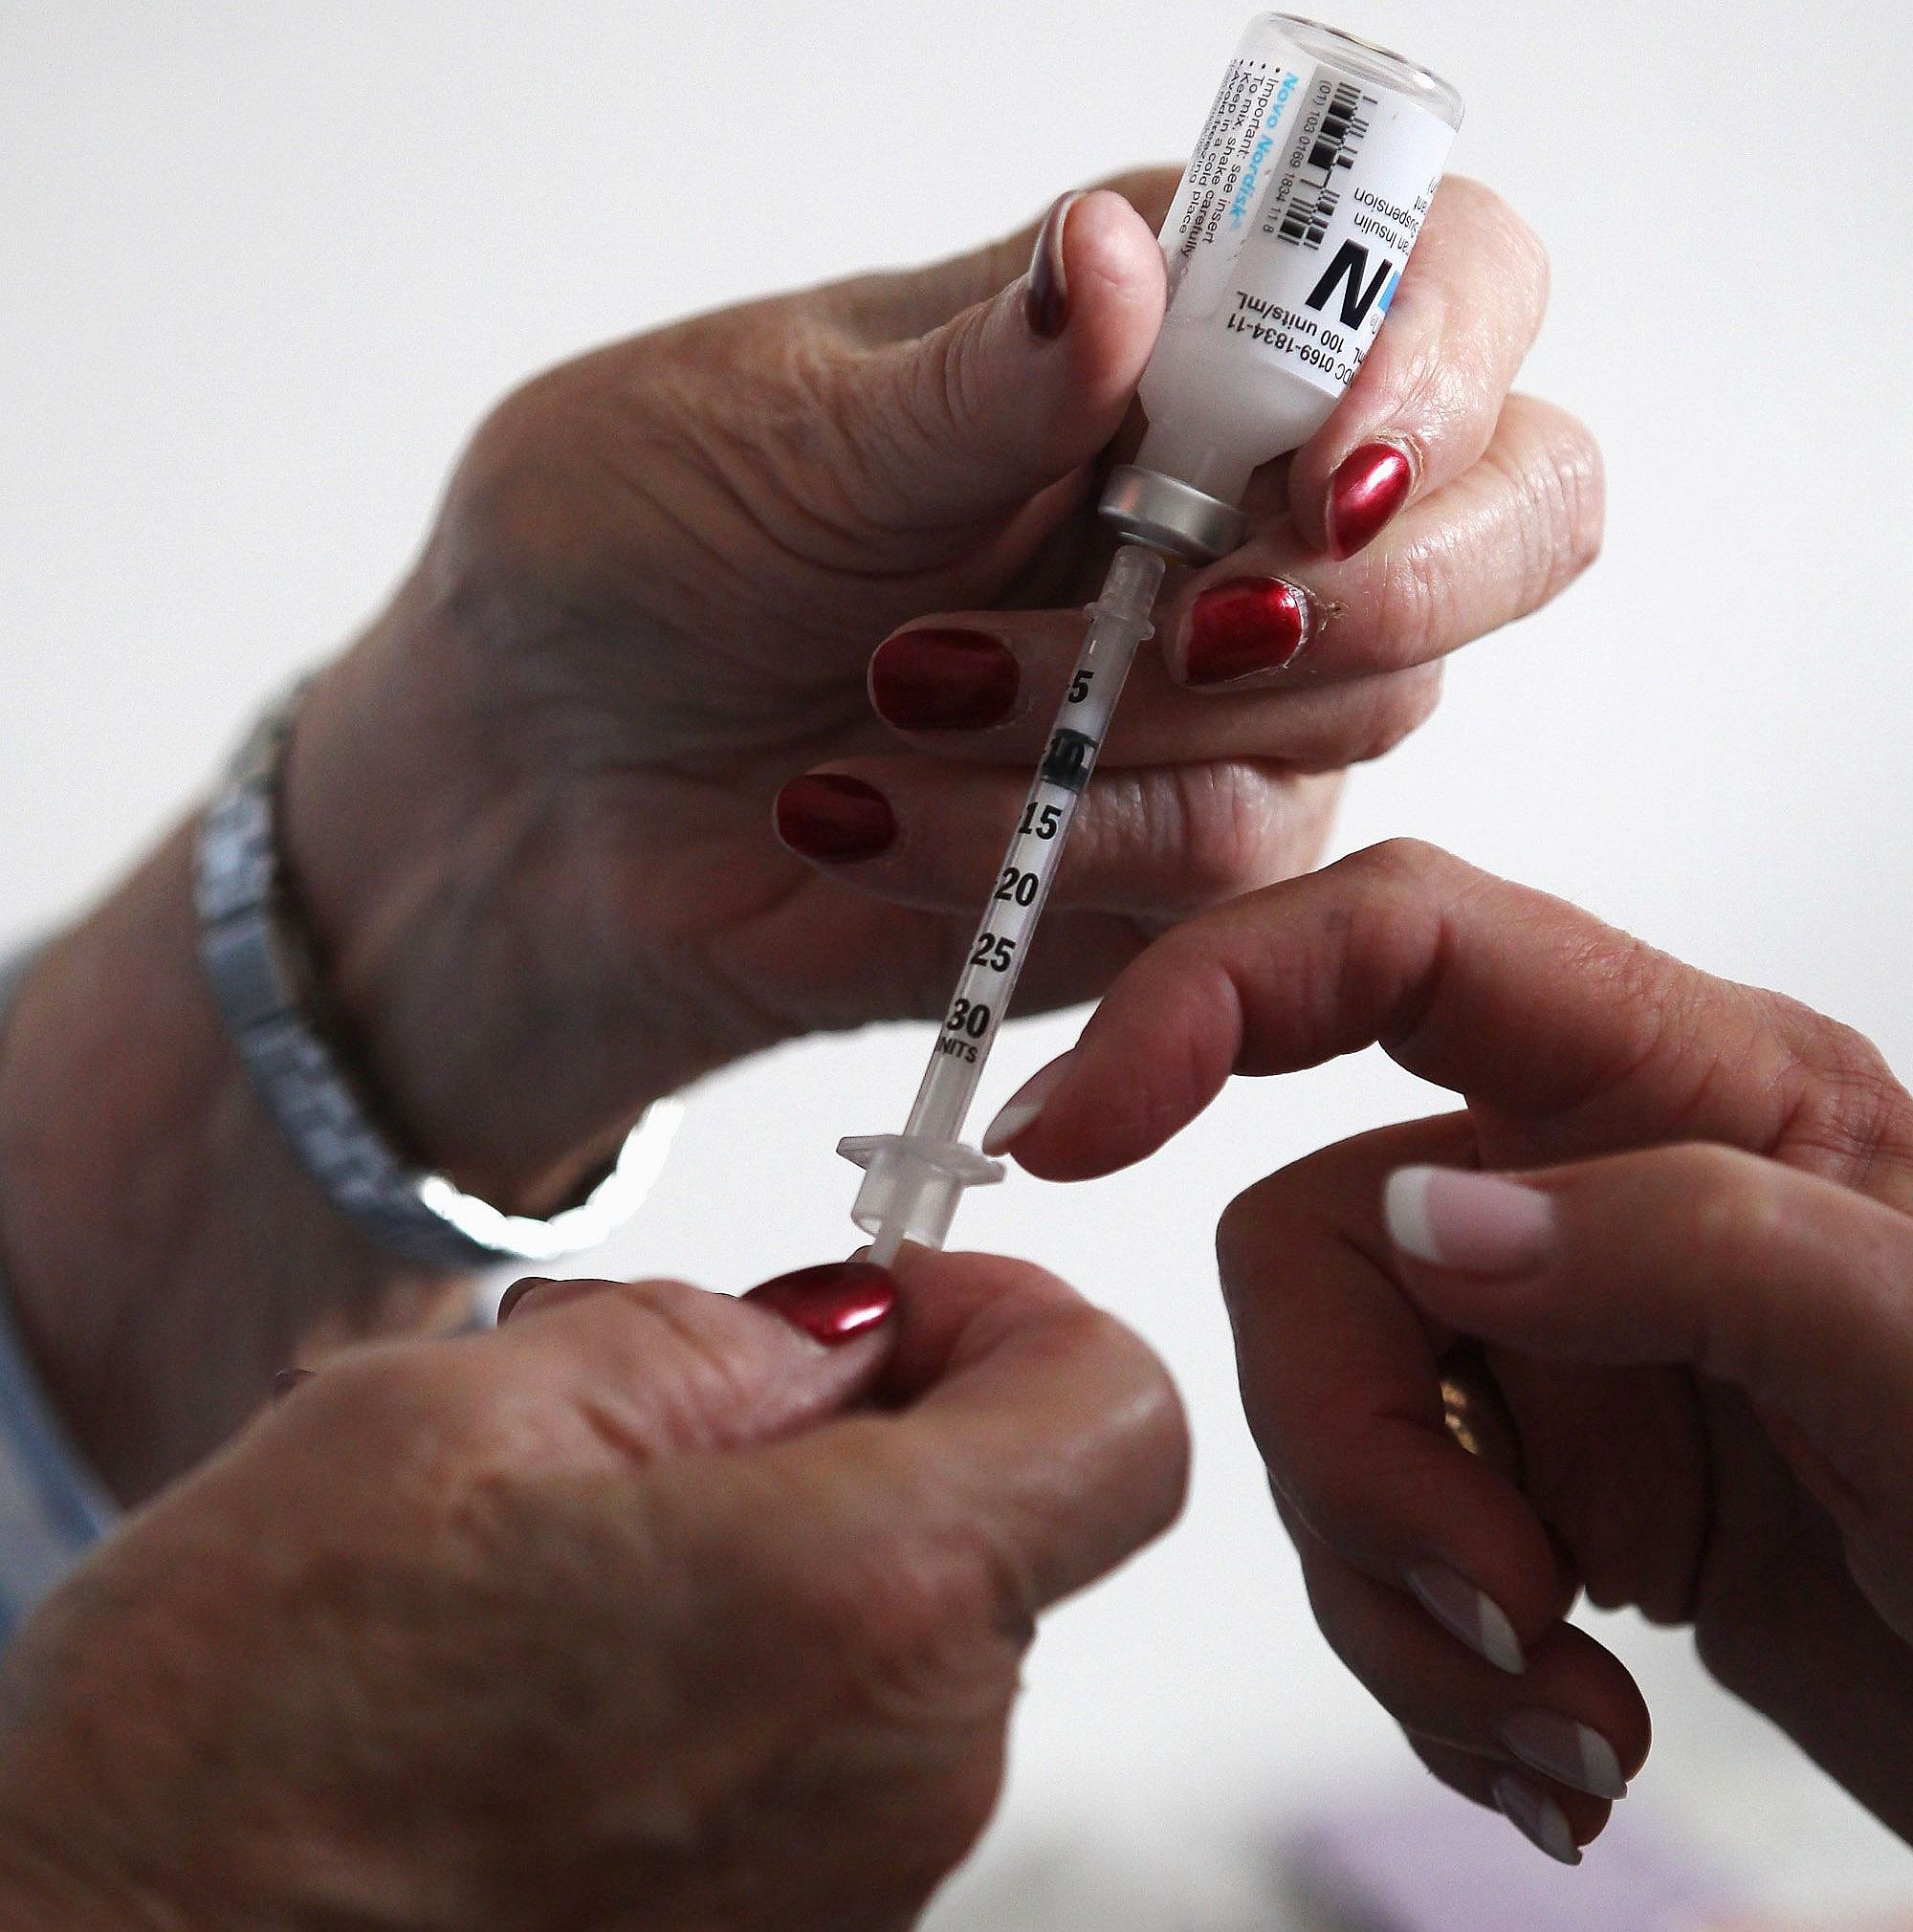 Родители искат инсулинови помпи за деца, НЗОК отказа